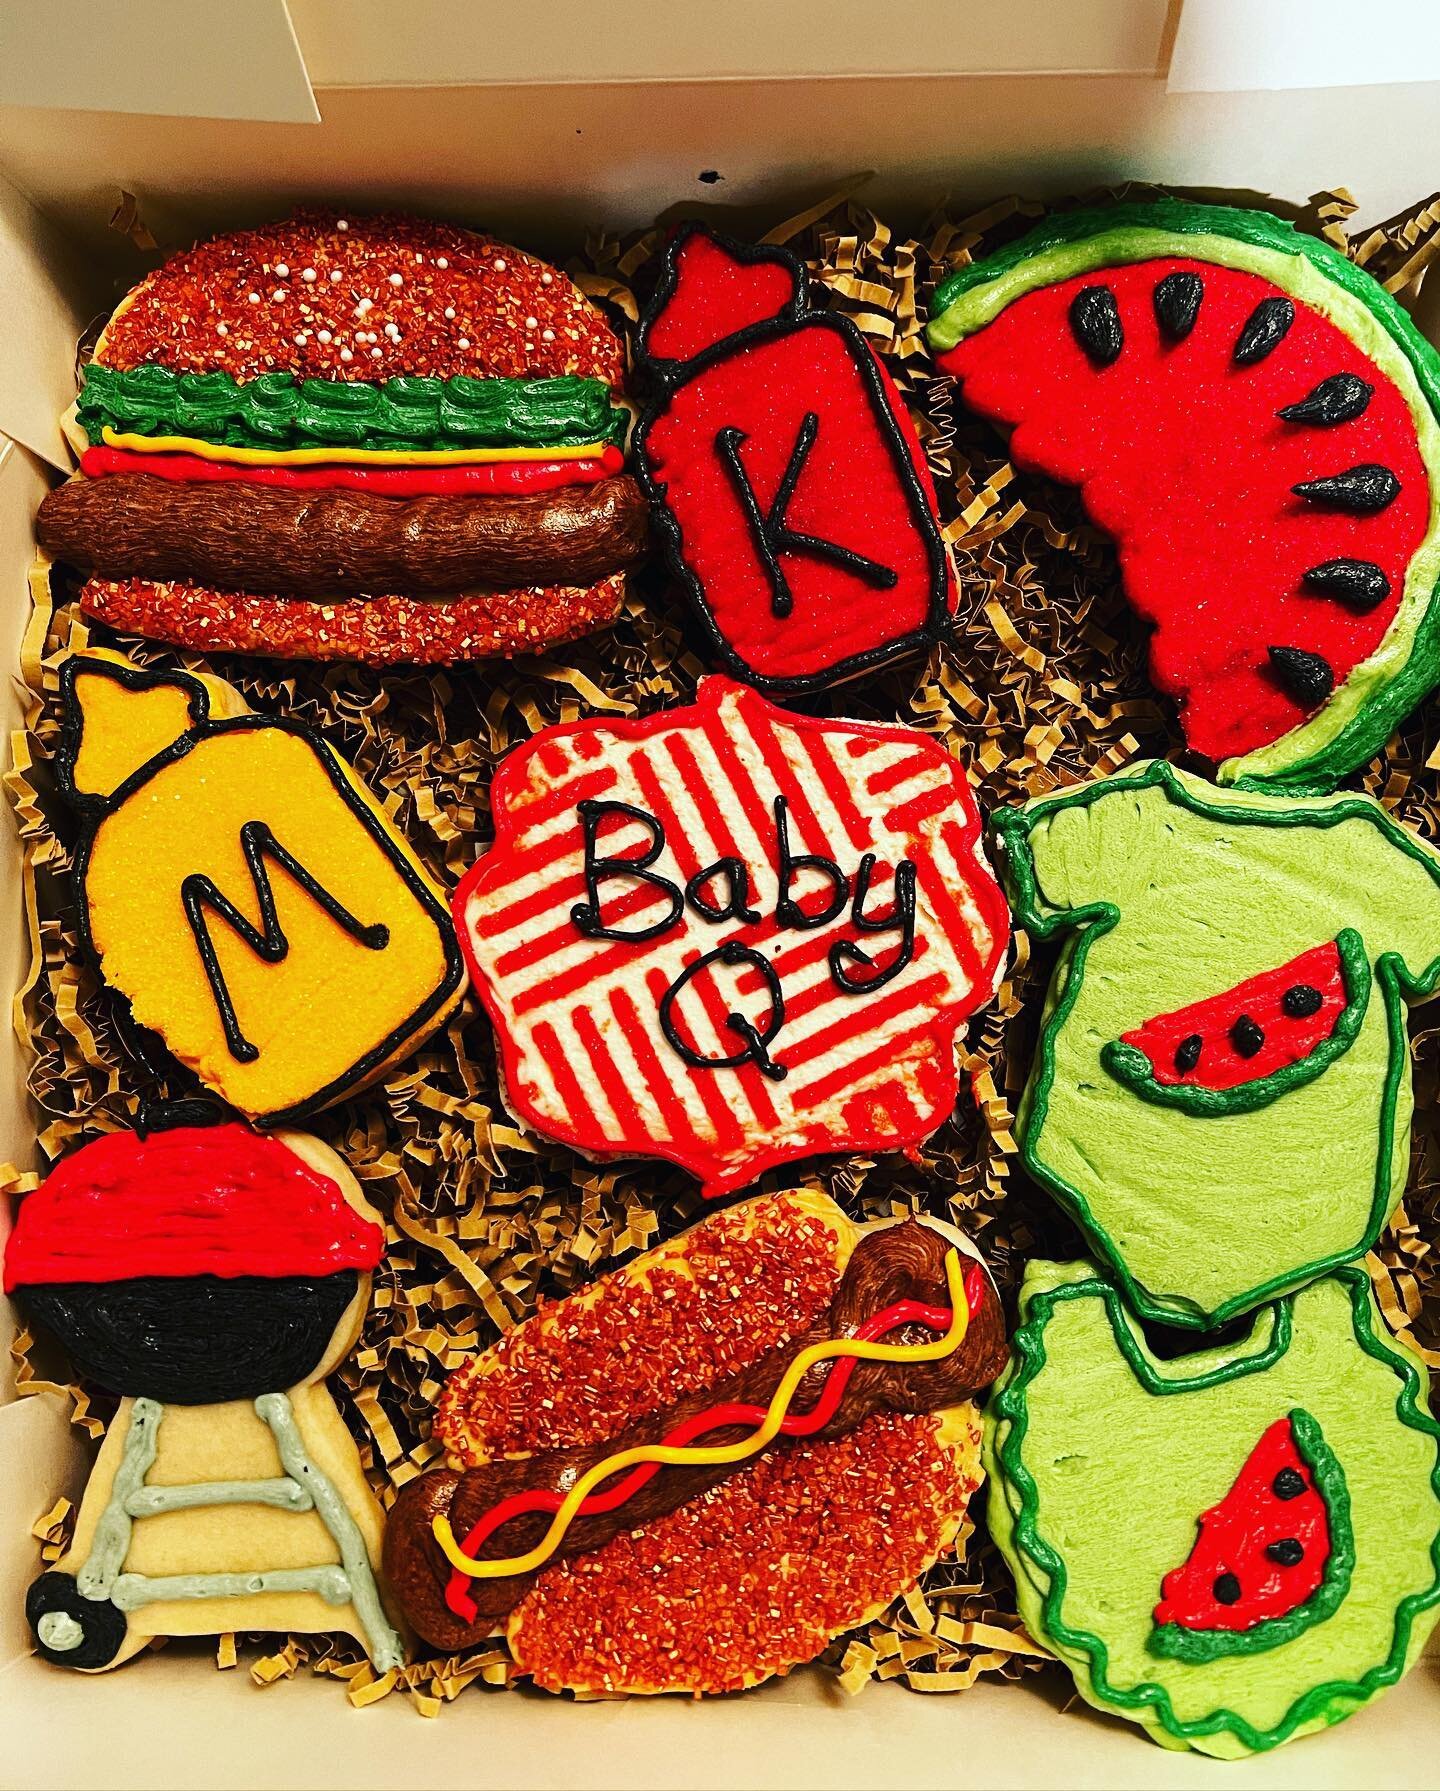 BaBy~Q Cookies!!!
🌭👶🏼🍔👶🏼🌭
-
-
-
-
-
#rhbakes #cookies #cookiedecorating #cookiesofinstagram #decoratedsugarcookies #babyshower #bbq #babyq #baking #bakingfromscratch #fromscratch #fromscratchwithlove #fromscratchbaking #sugarcookies #buttercre